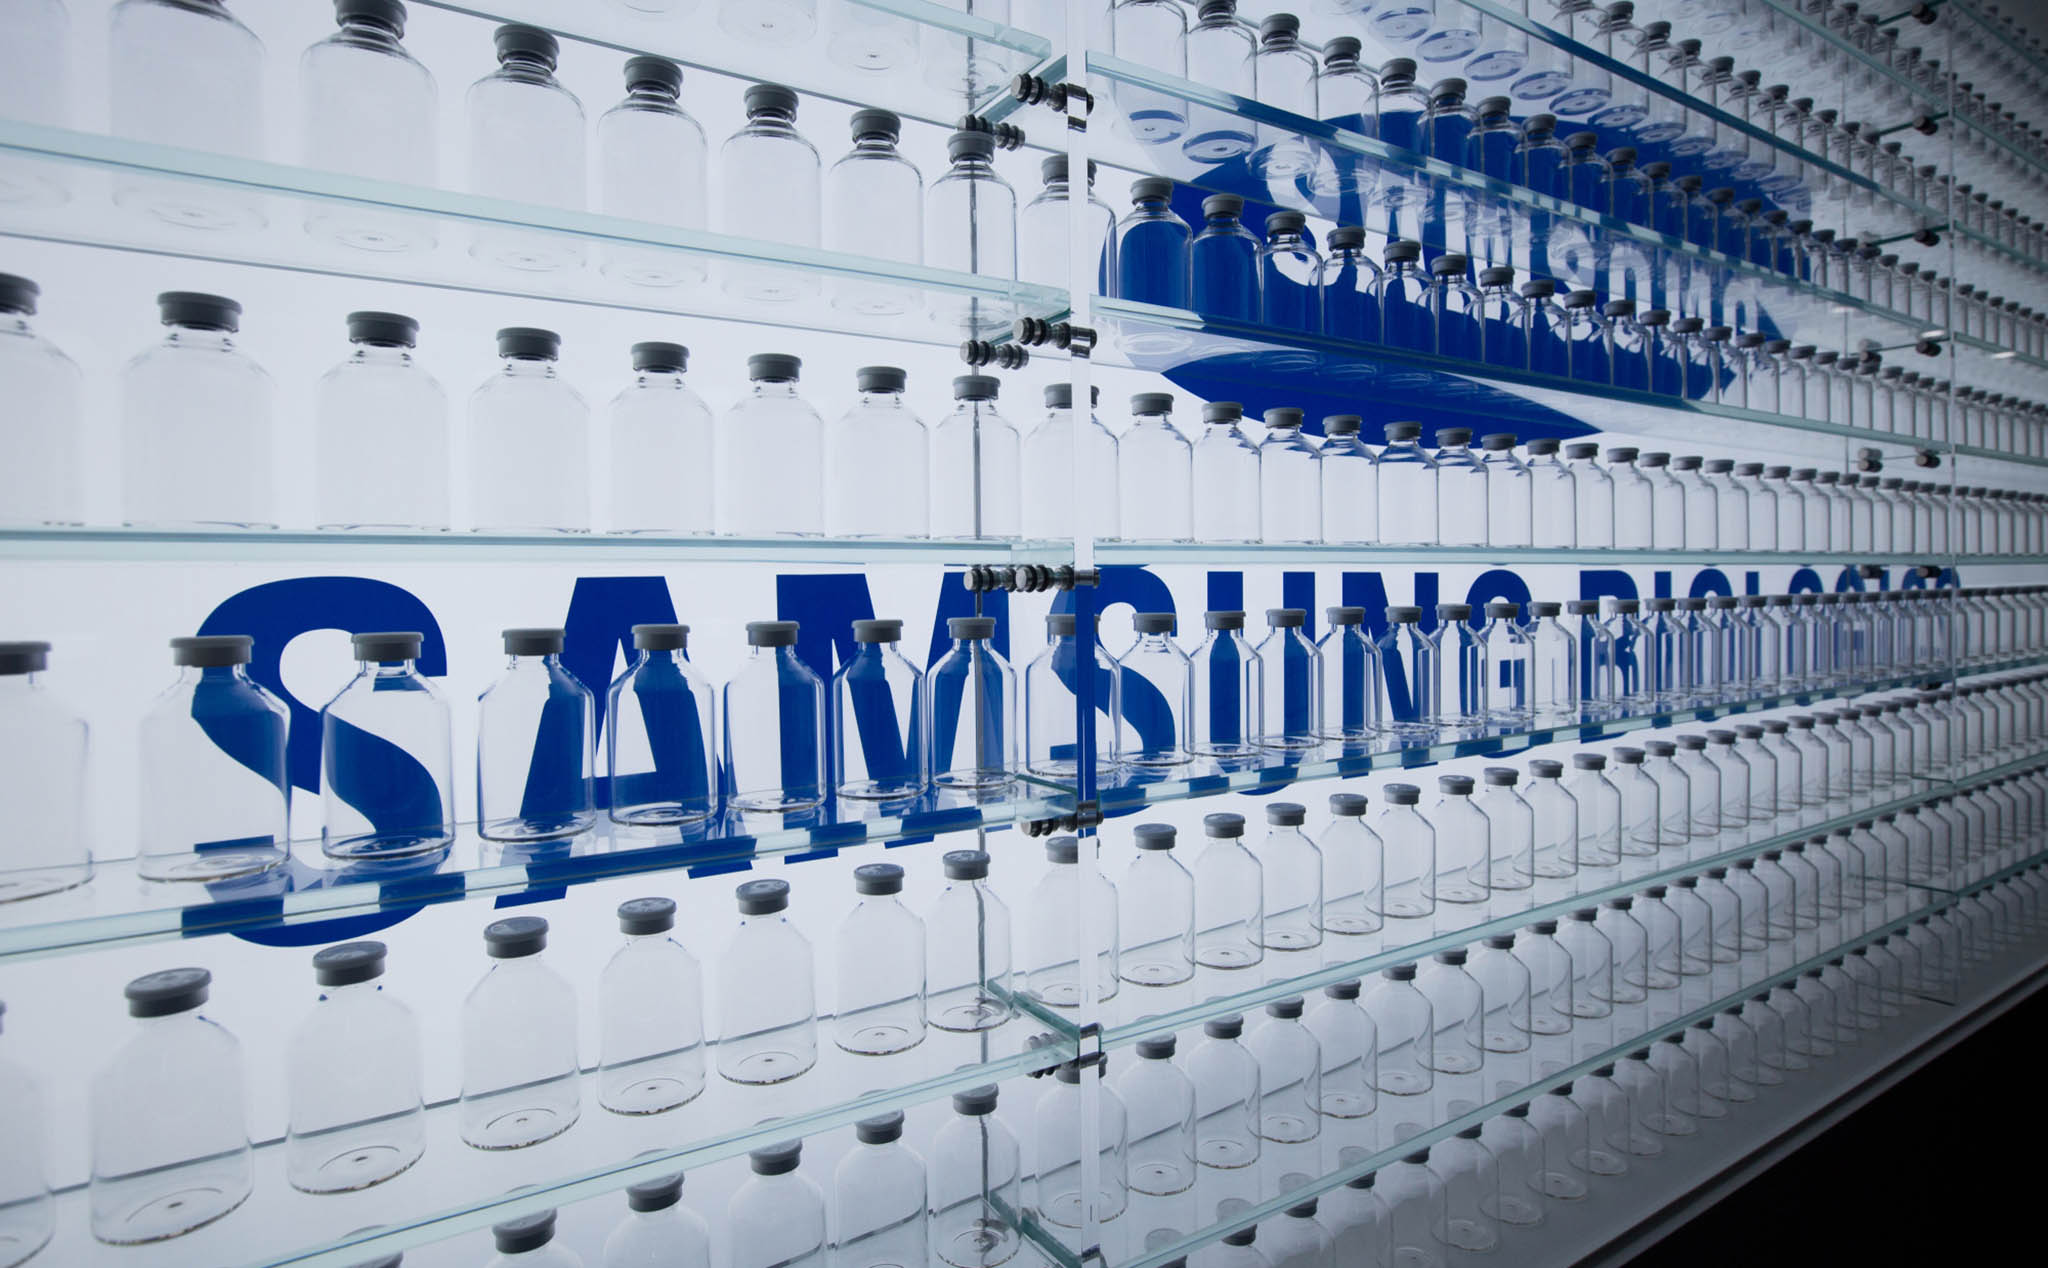 Nội bộ Samsung rối loạn sau khi hàng loạt điều hành viên cấp cao bị bắt vì gian lận kế toán